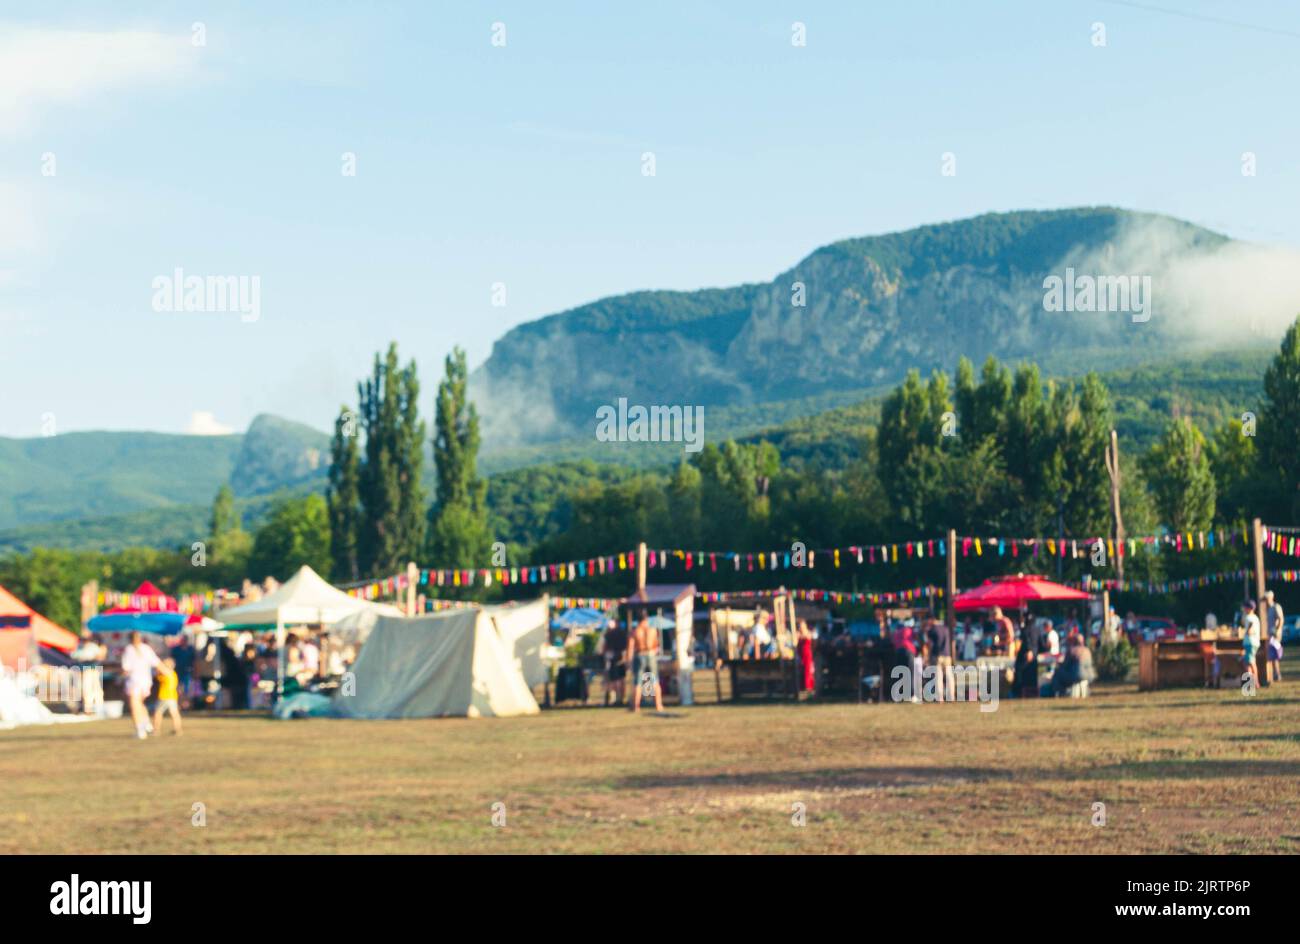 Hermoso bokeh fondo del festival en el campo rodeado de montañas. Foto de stock